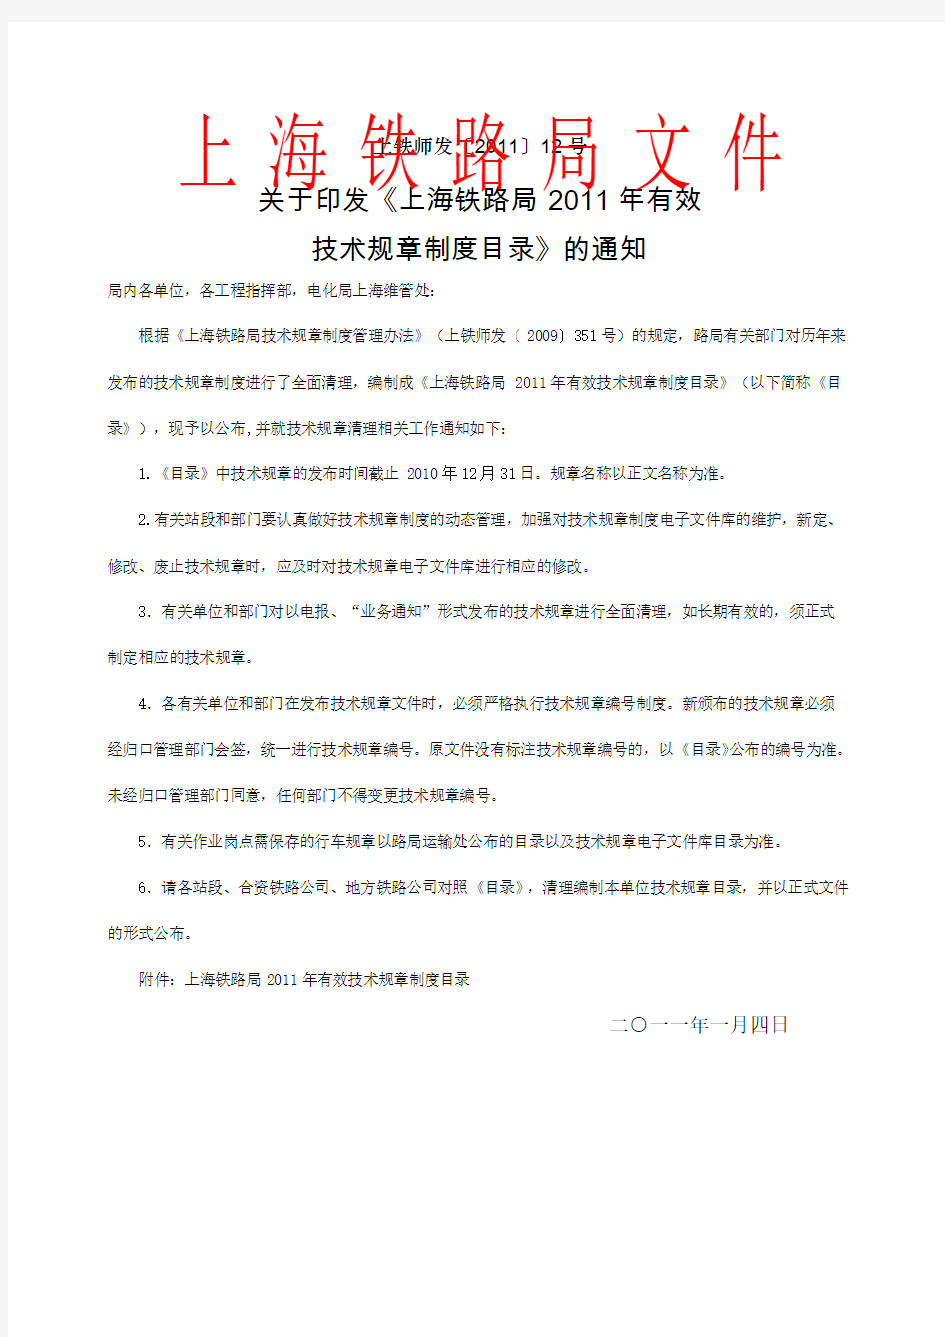 印发《上海铁路局有效技术规章制度目录》的通知